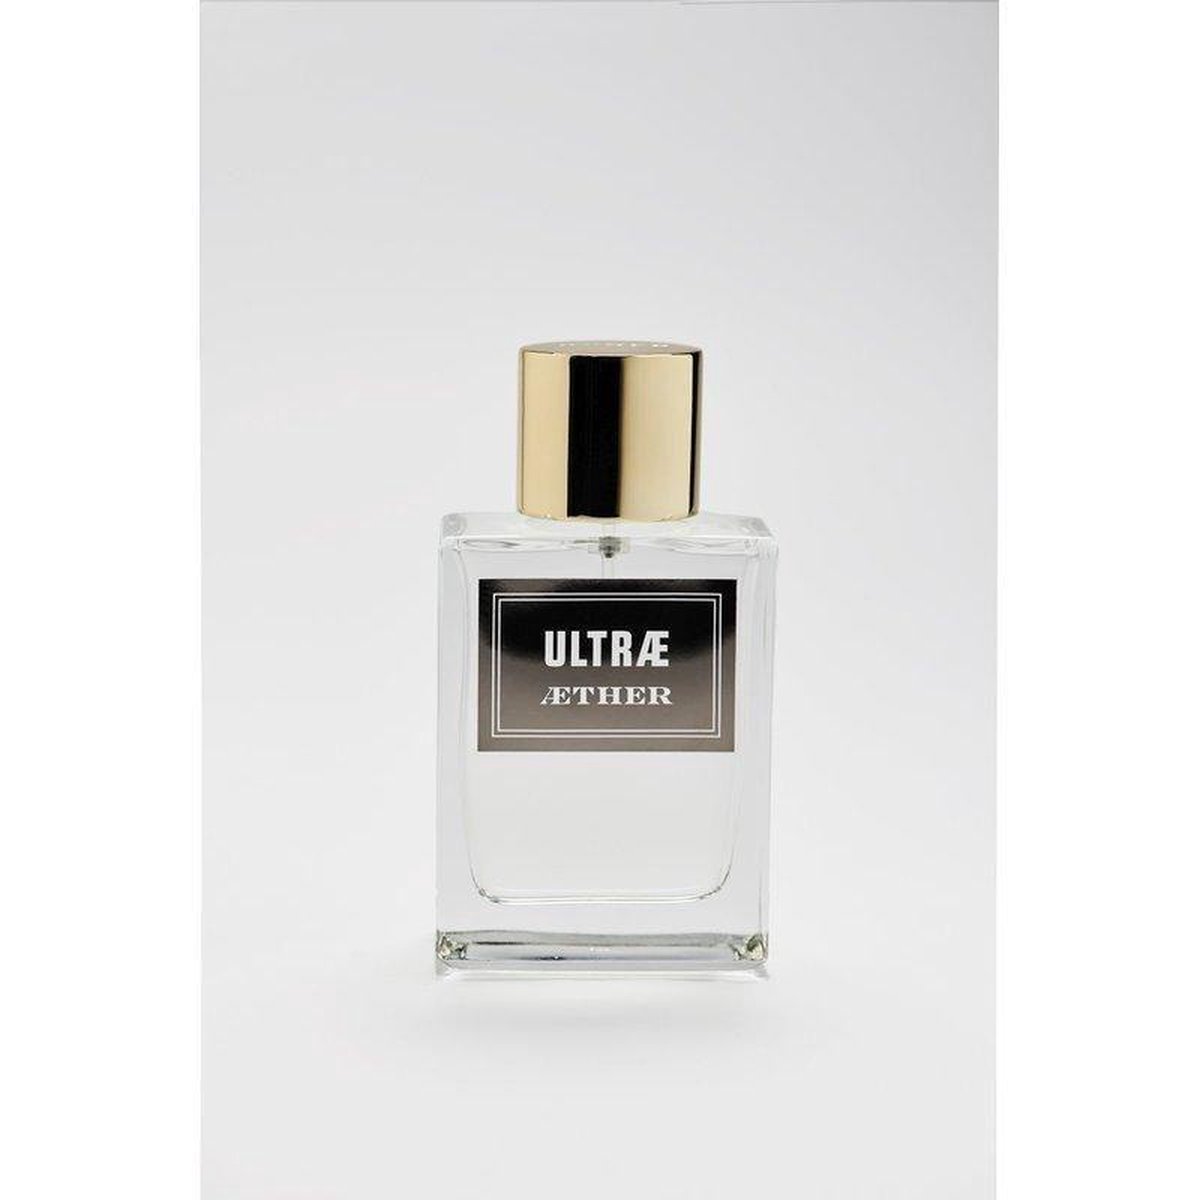 AETHER - ULTRÆ EAU DE PARFUM - 75 ml - eau de parfum